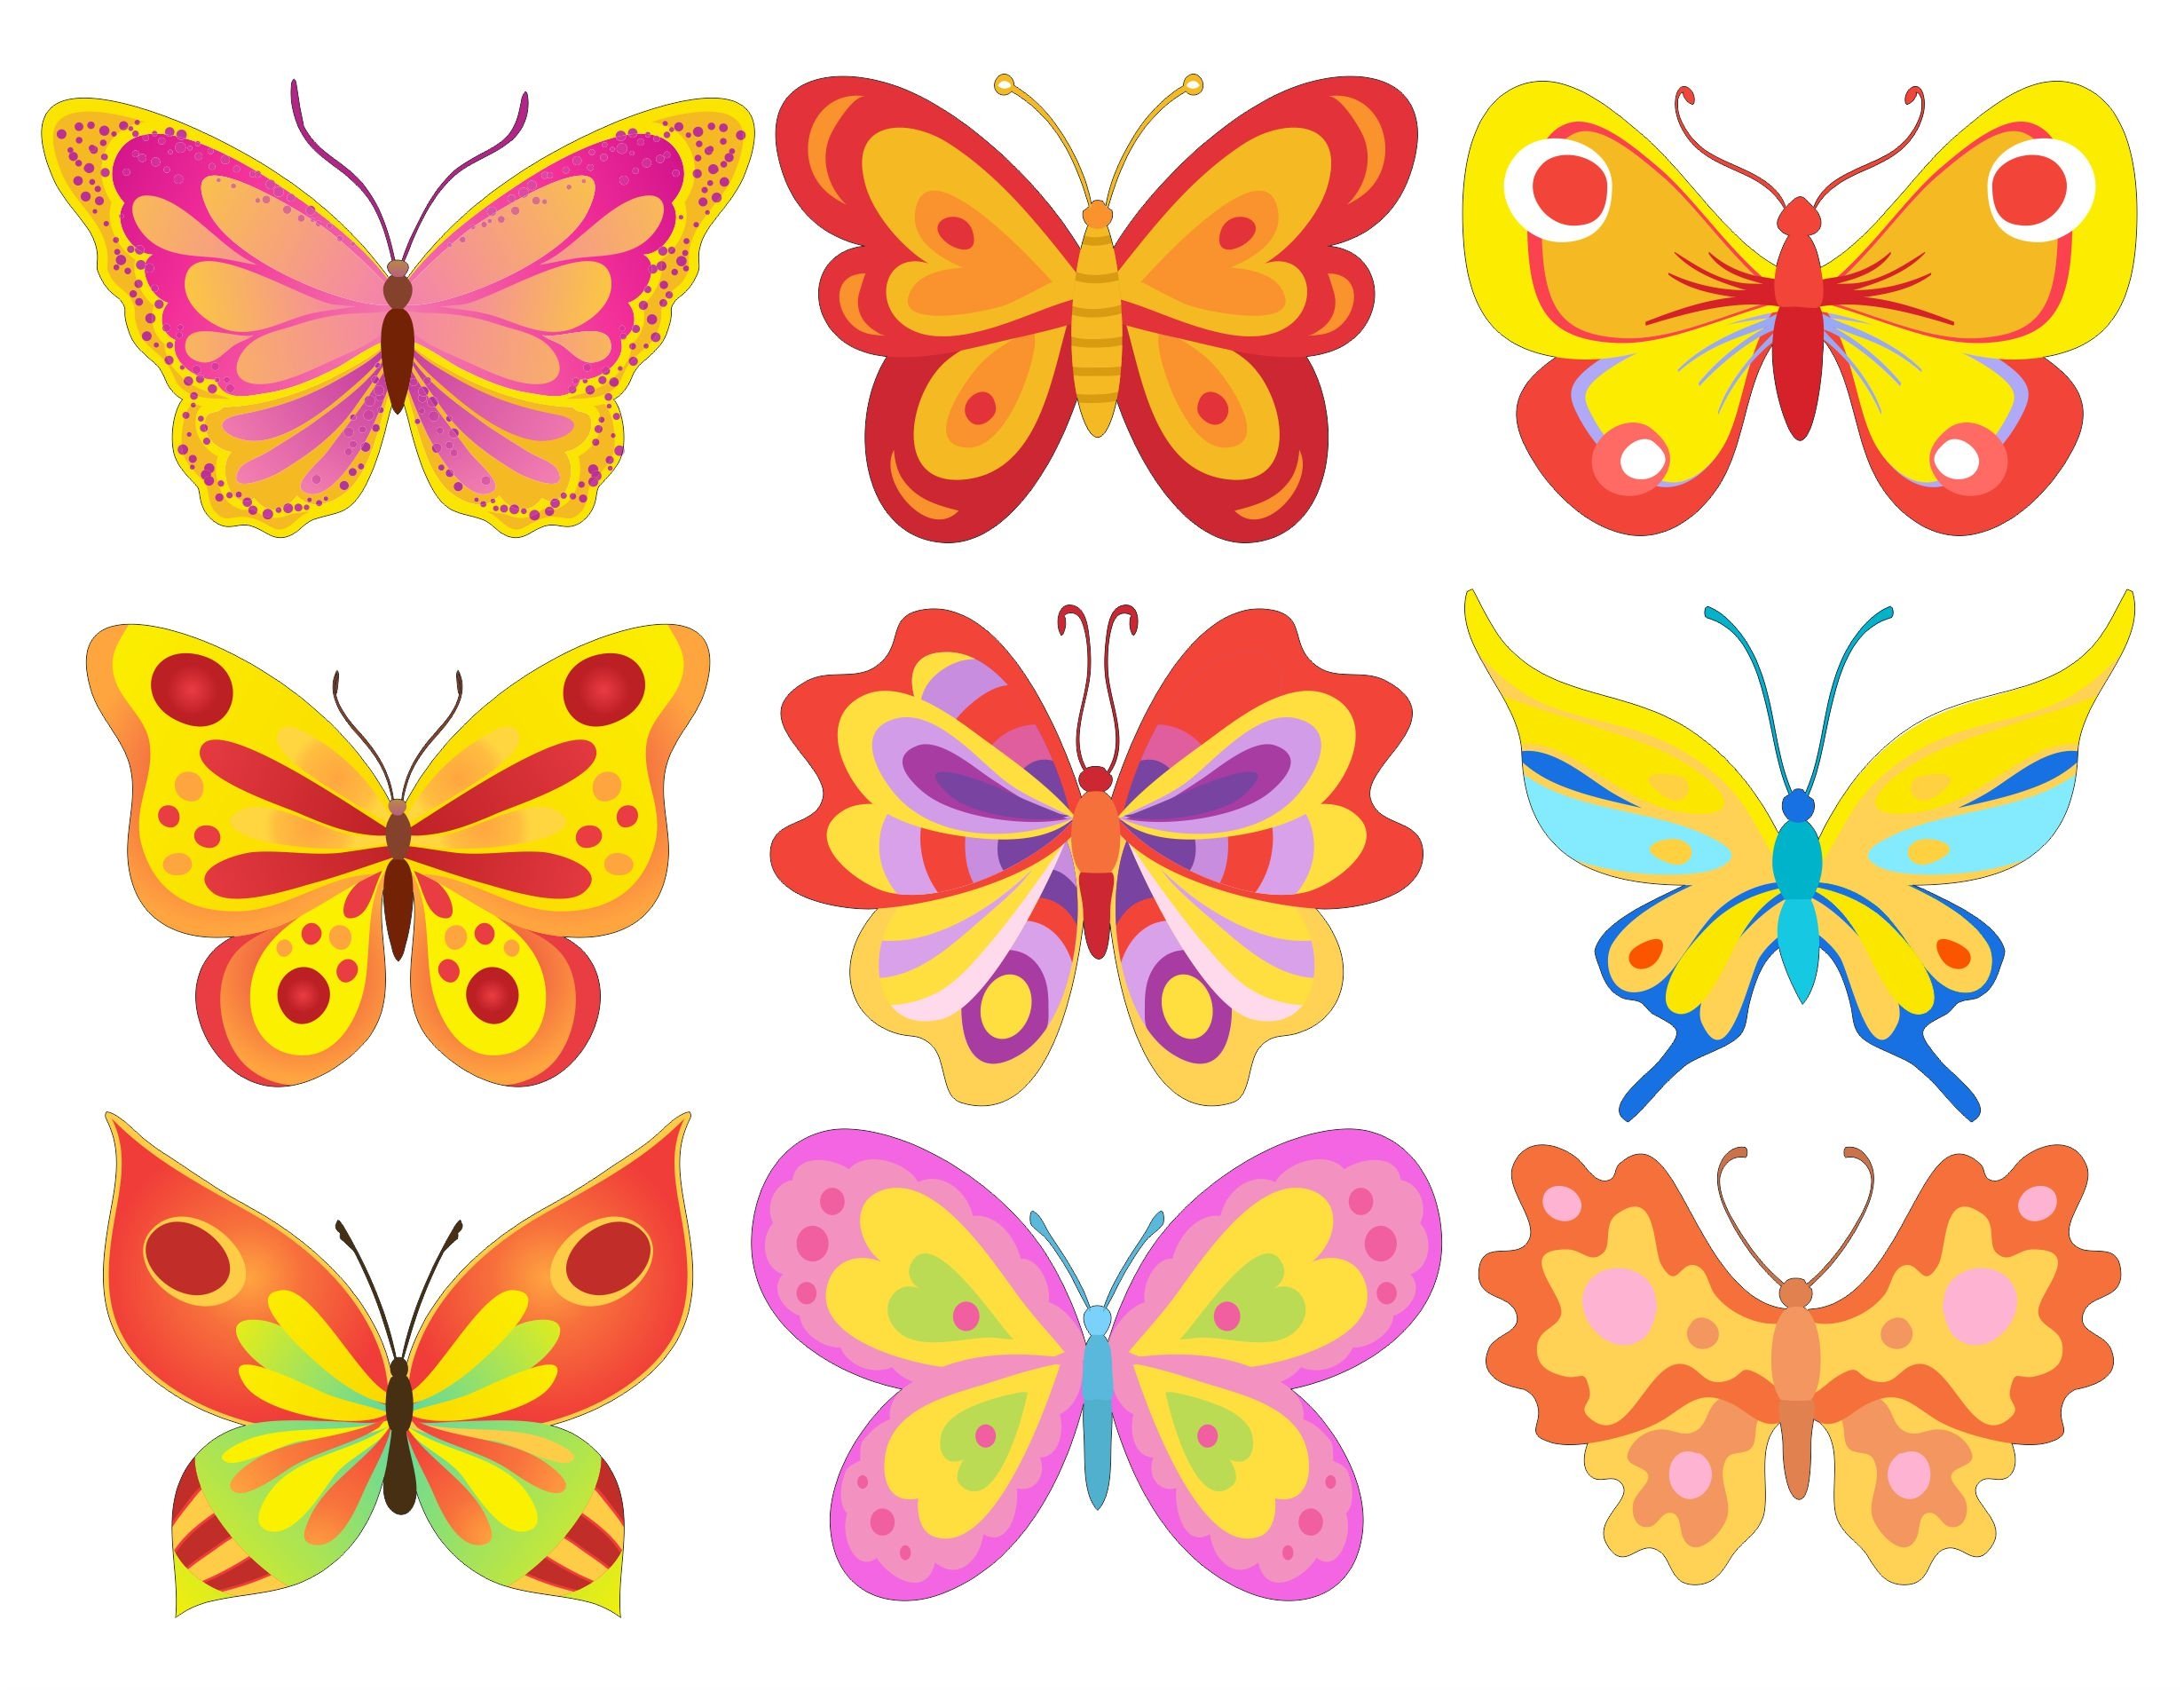 Бабочки цветные картинки для вырезания. Бабочки для вырезания цветные. Бабочки трафарет цветные. Разноцветные бабочки для вырезания. Бабочки трафарет для вырезания цветные.